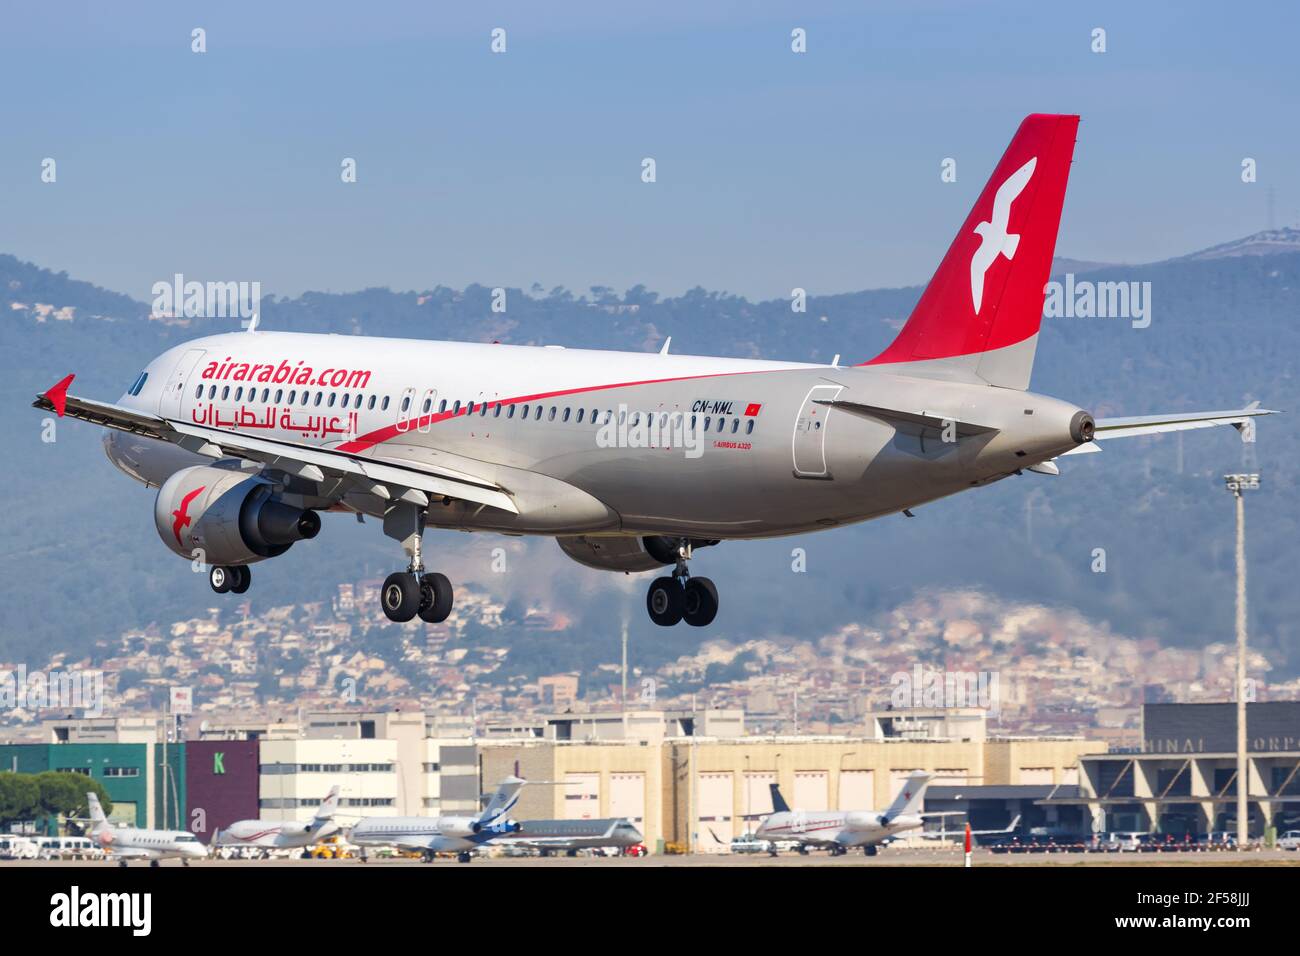 Barcelona, Spain - June 9, 2018: An Air Arabia Maroc Airbus A320 airplane at Barcelona airport (BCN) in Spain. Airbus is a European aircraft manufactu Stock Photo